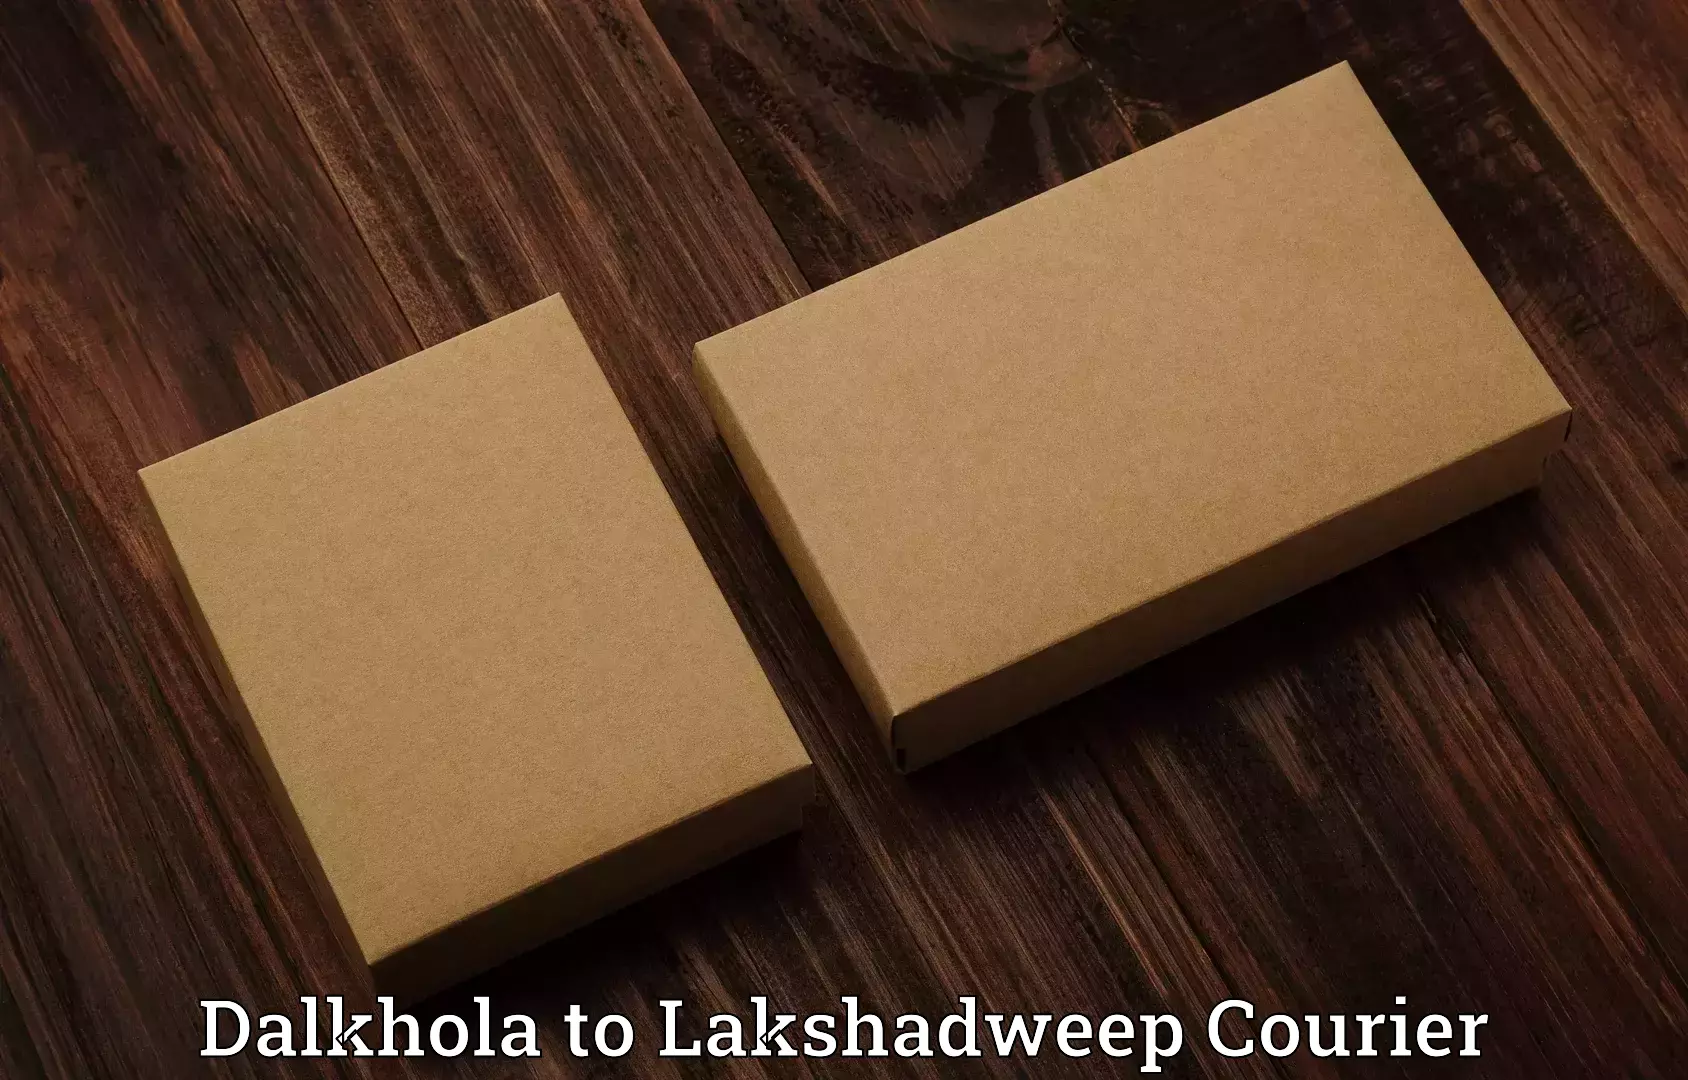 Luggage transport company Dalkhola to Lakshadweep